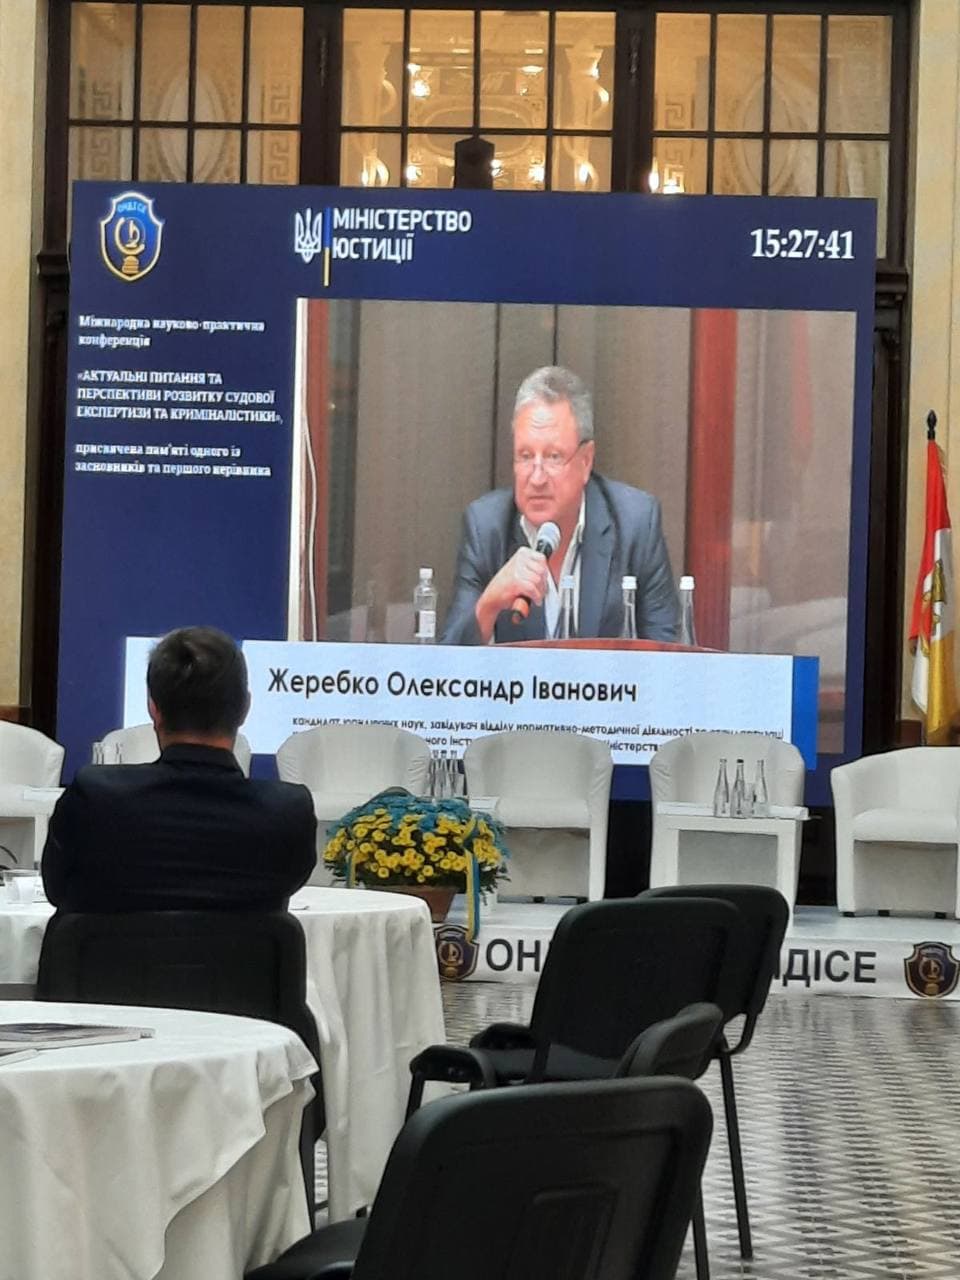 КНДІСЕ взяв участь у міжнародній науково-практичній конференції «Актуальні питання та перспективи розвитку судової експертизи та криміналістики»